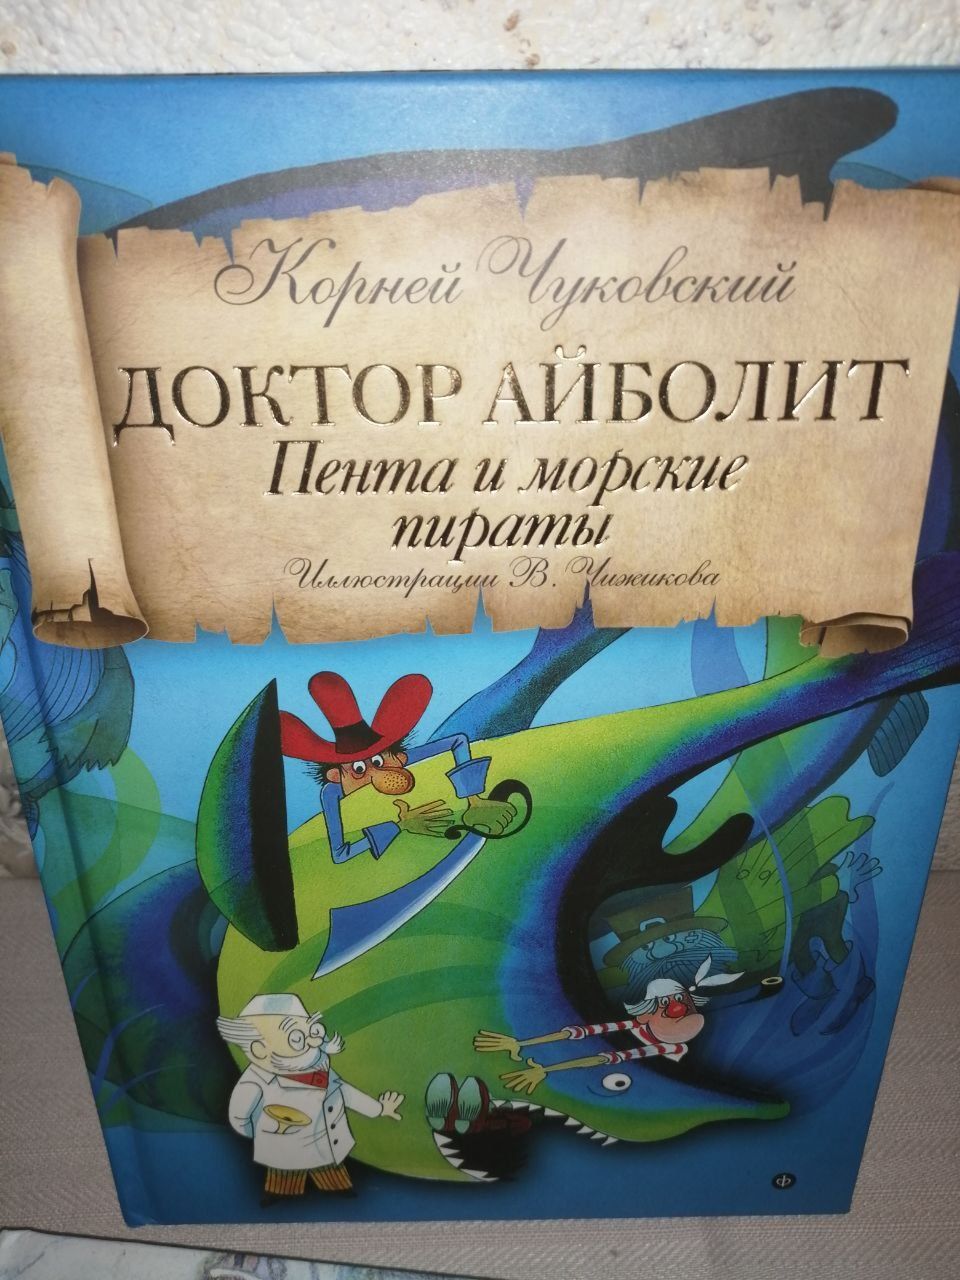 Собрание русских народных сказок, размер книги А 4